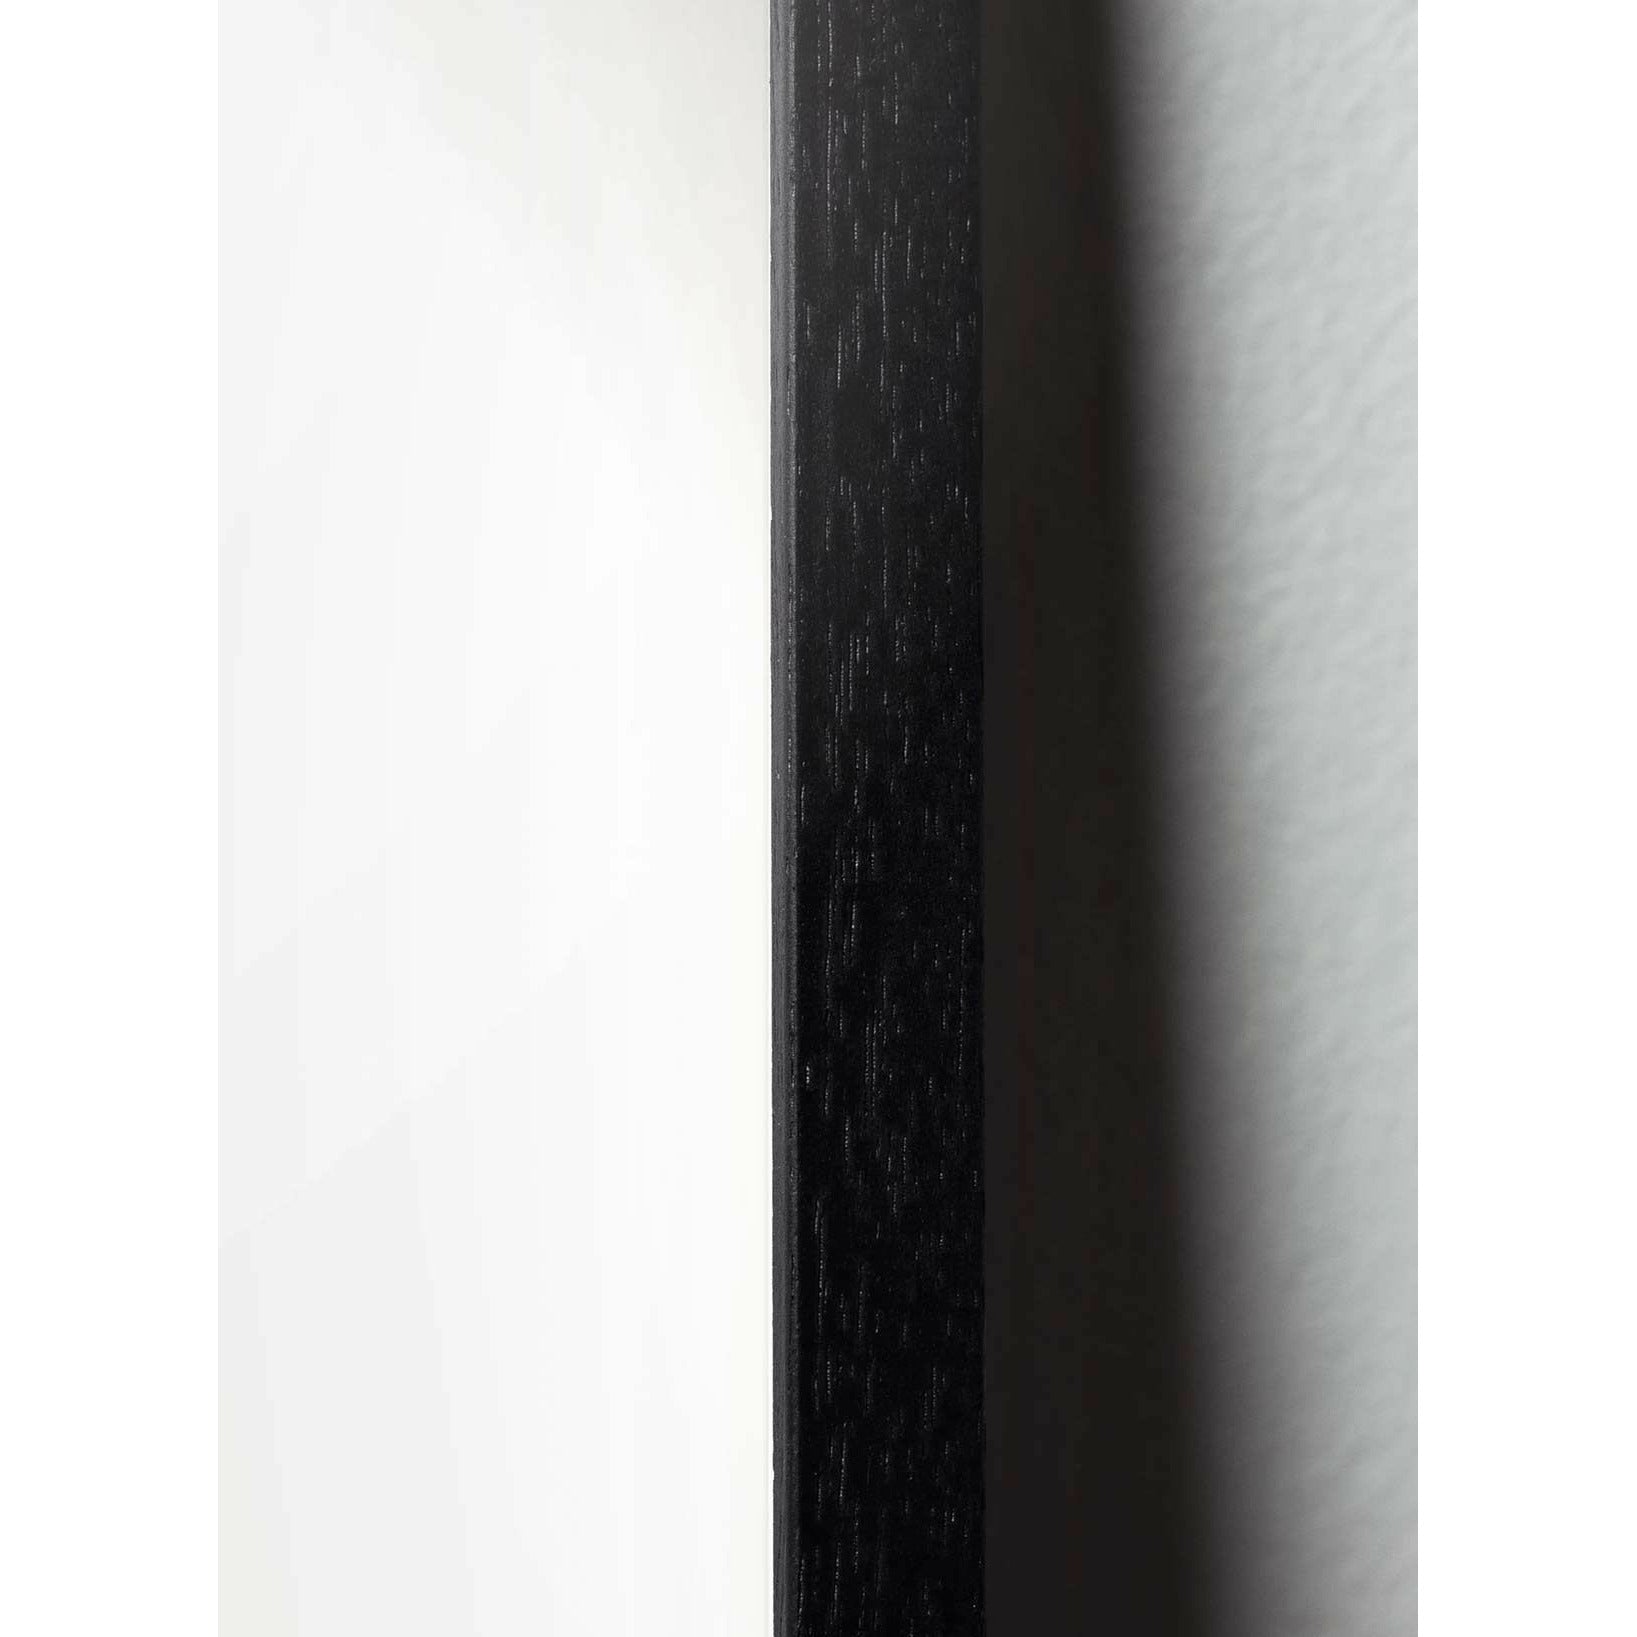 Brainchild Swan Parade -juliste, kehys, joka on valmistettu mustasta lakatusta puusta, 70x100 cm